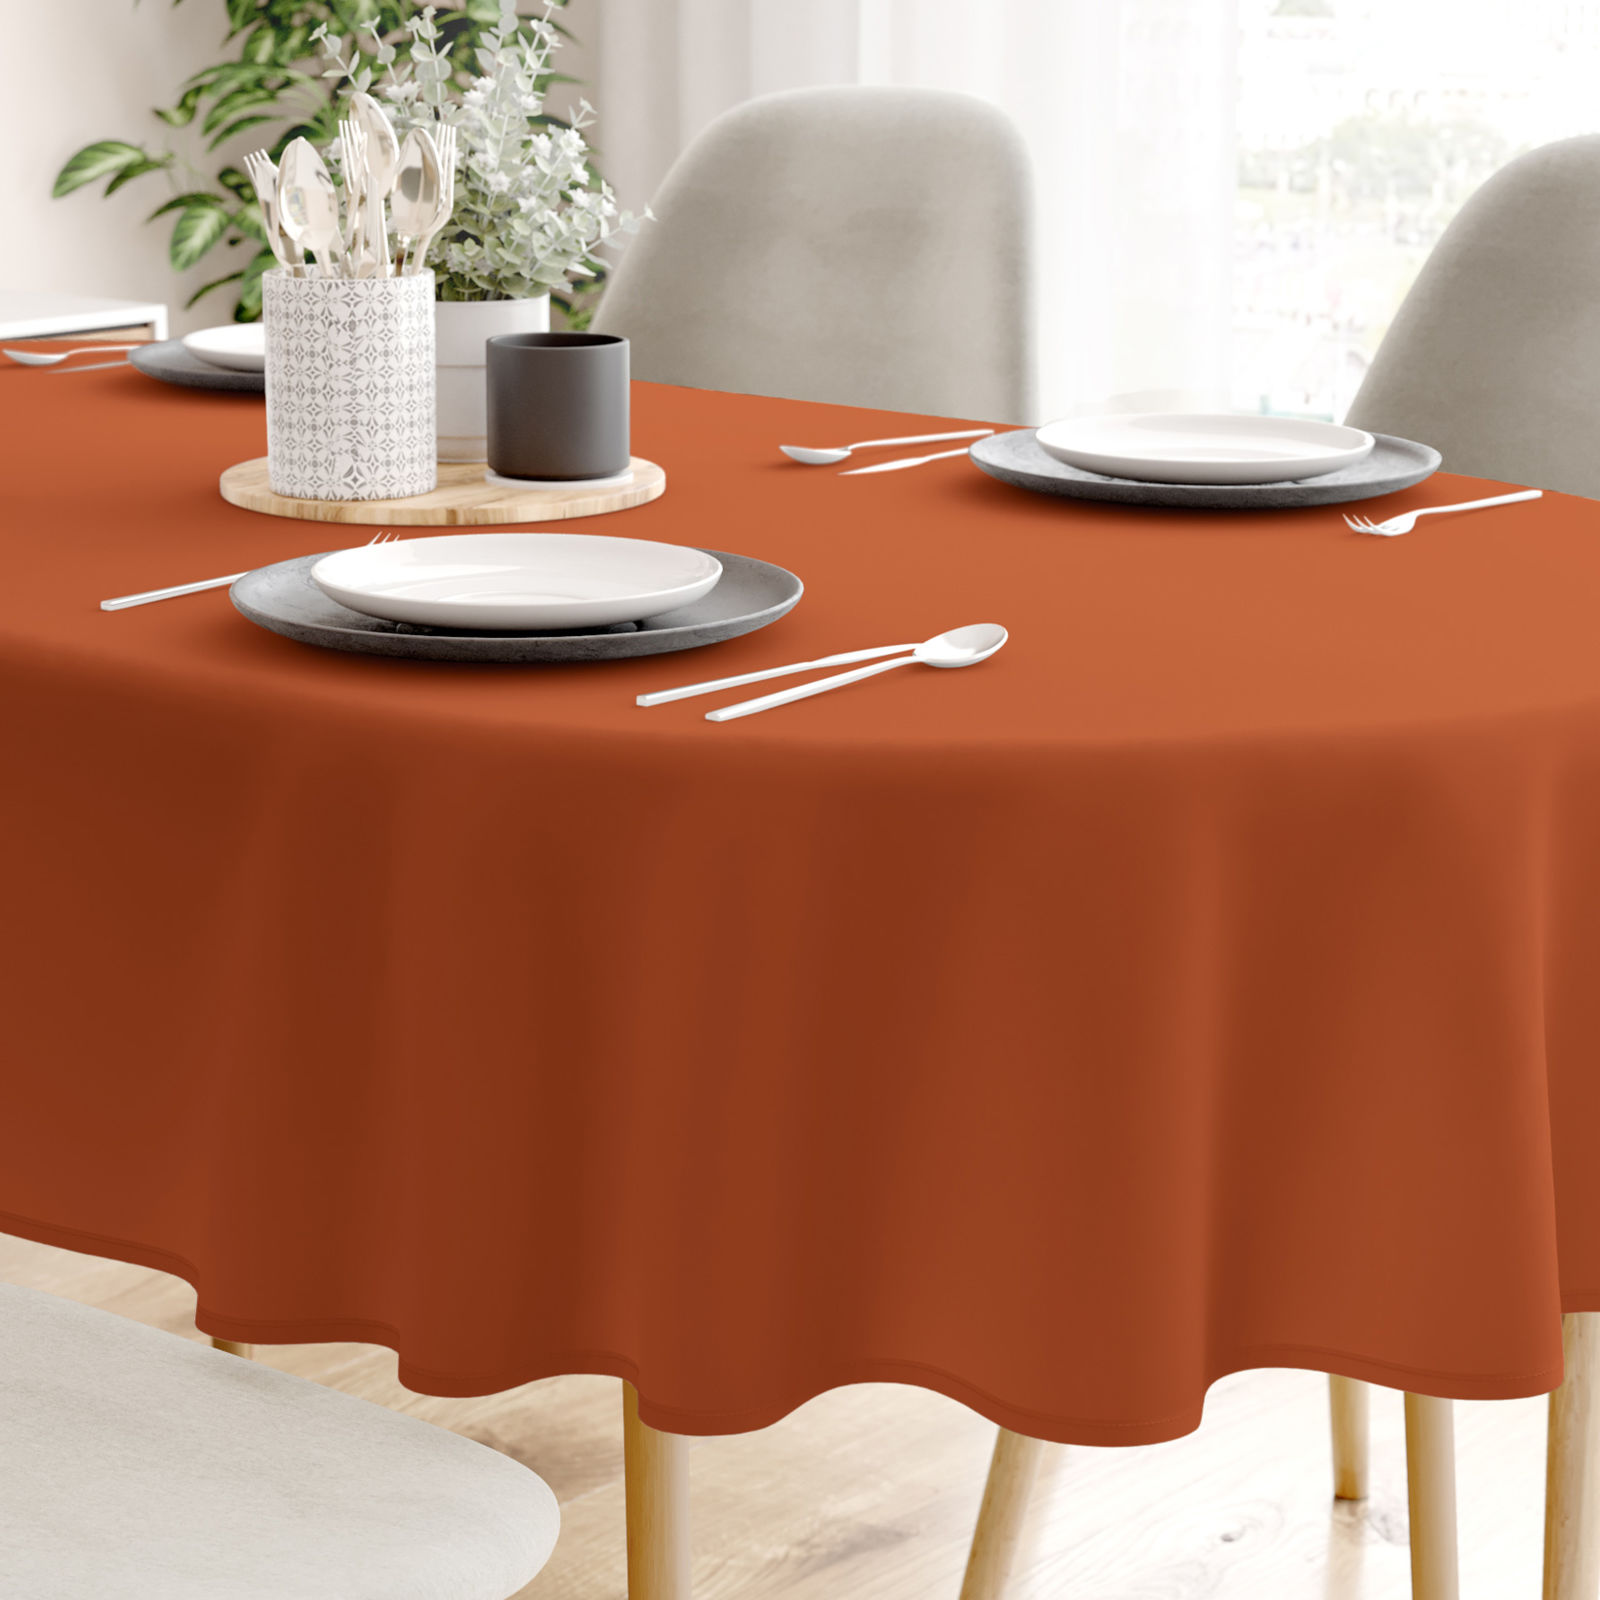 Pamut asztalterítő - tégla színű - ovális